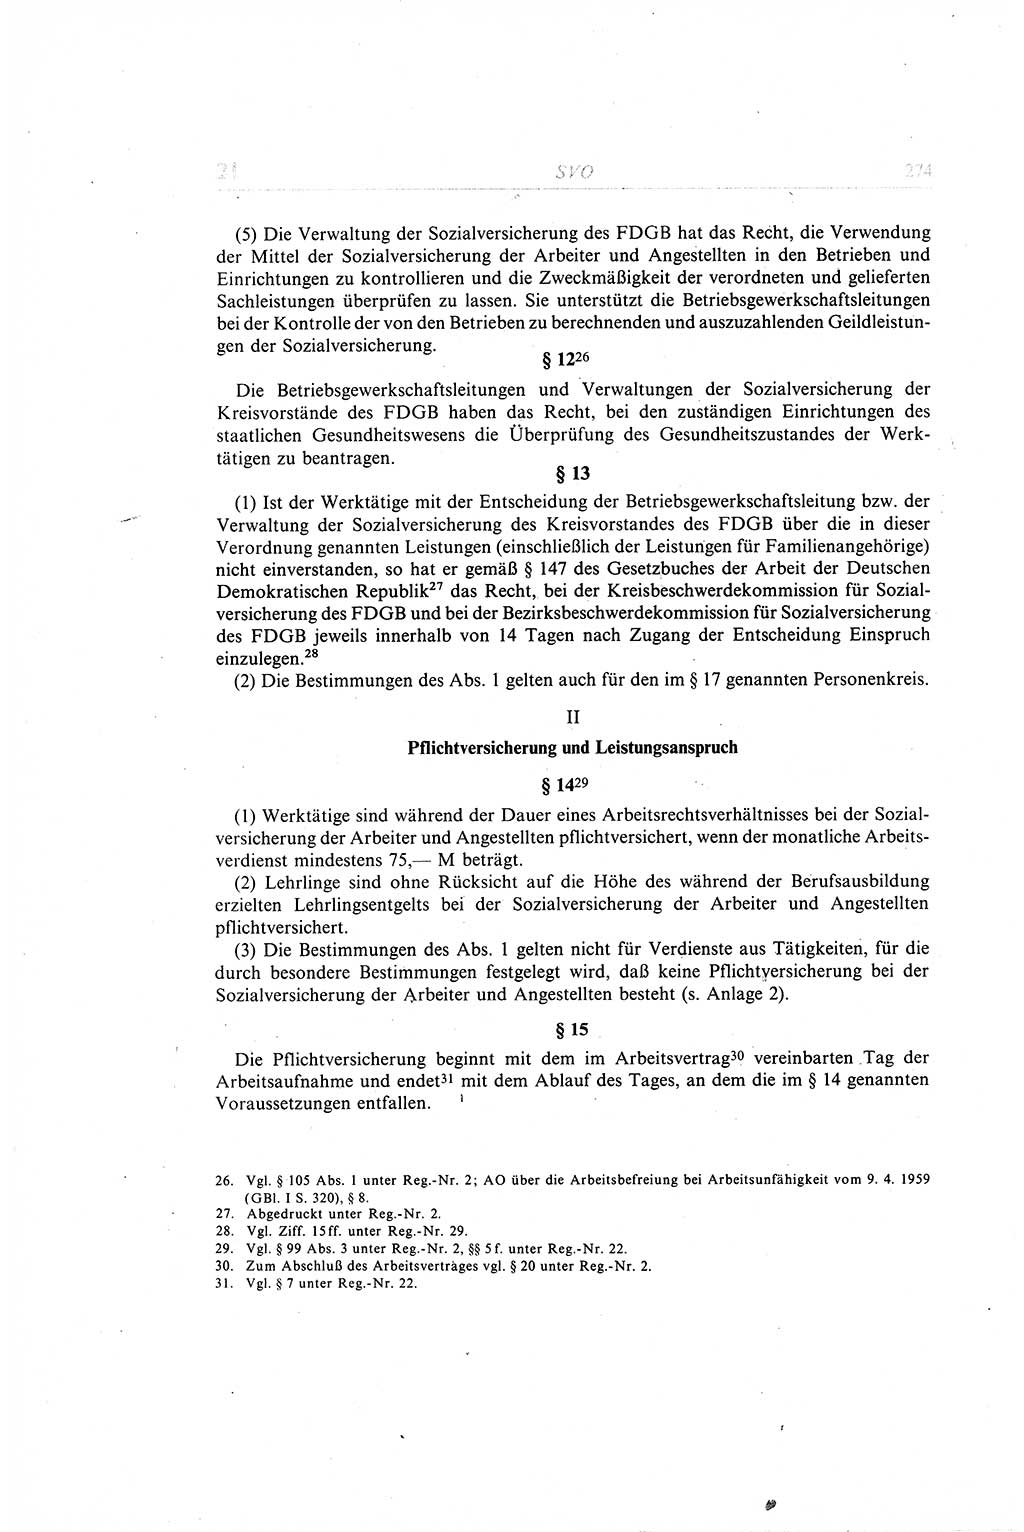 Gesetzbuch der Arbeit (GBA) und andere ausgewählte rechtliche Bestimmungen [Deutsche Demokratische Republik (DDR)] 1968, Seite 274 (GBA DDR 1968, S. 274)